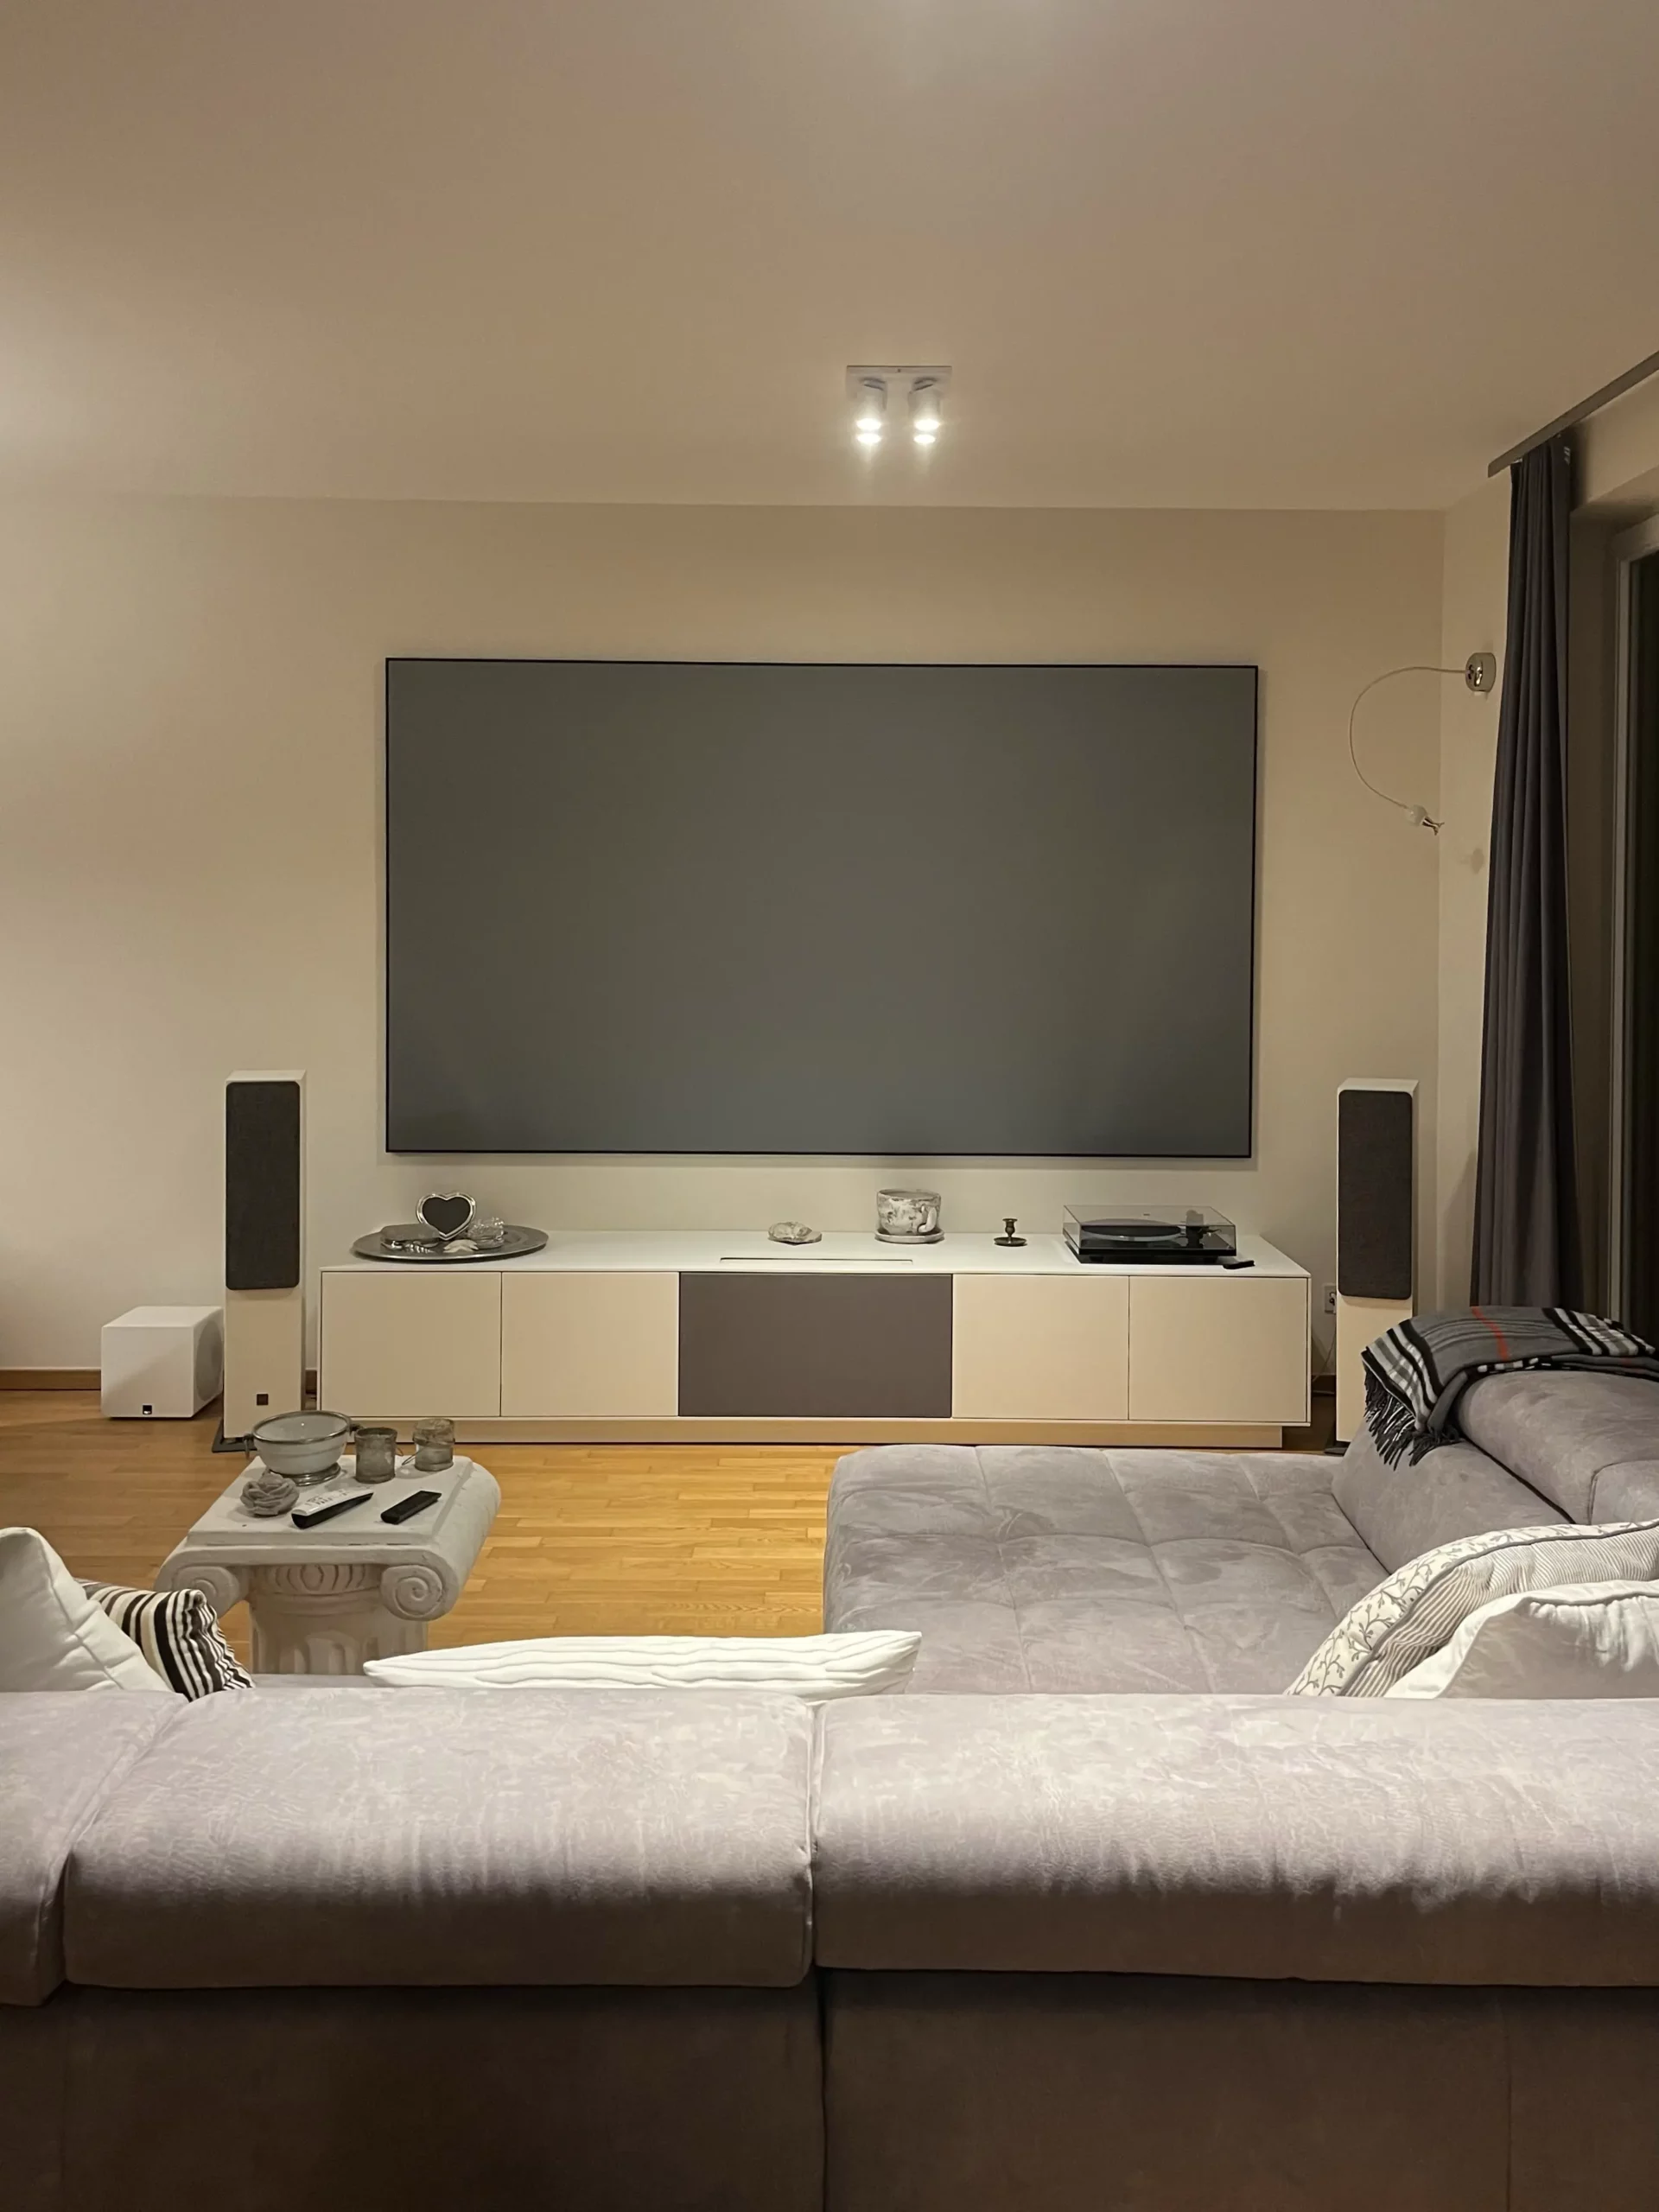 Maßgefertigtes Laser TV Lowbaord in hellem modernen Wohnzimmer.